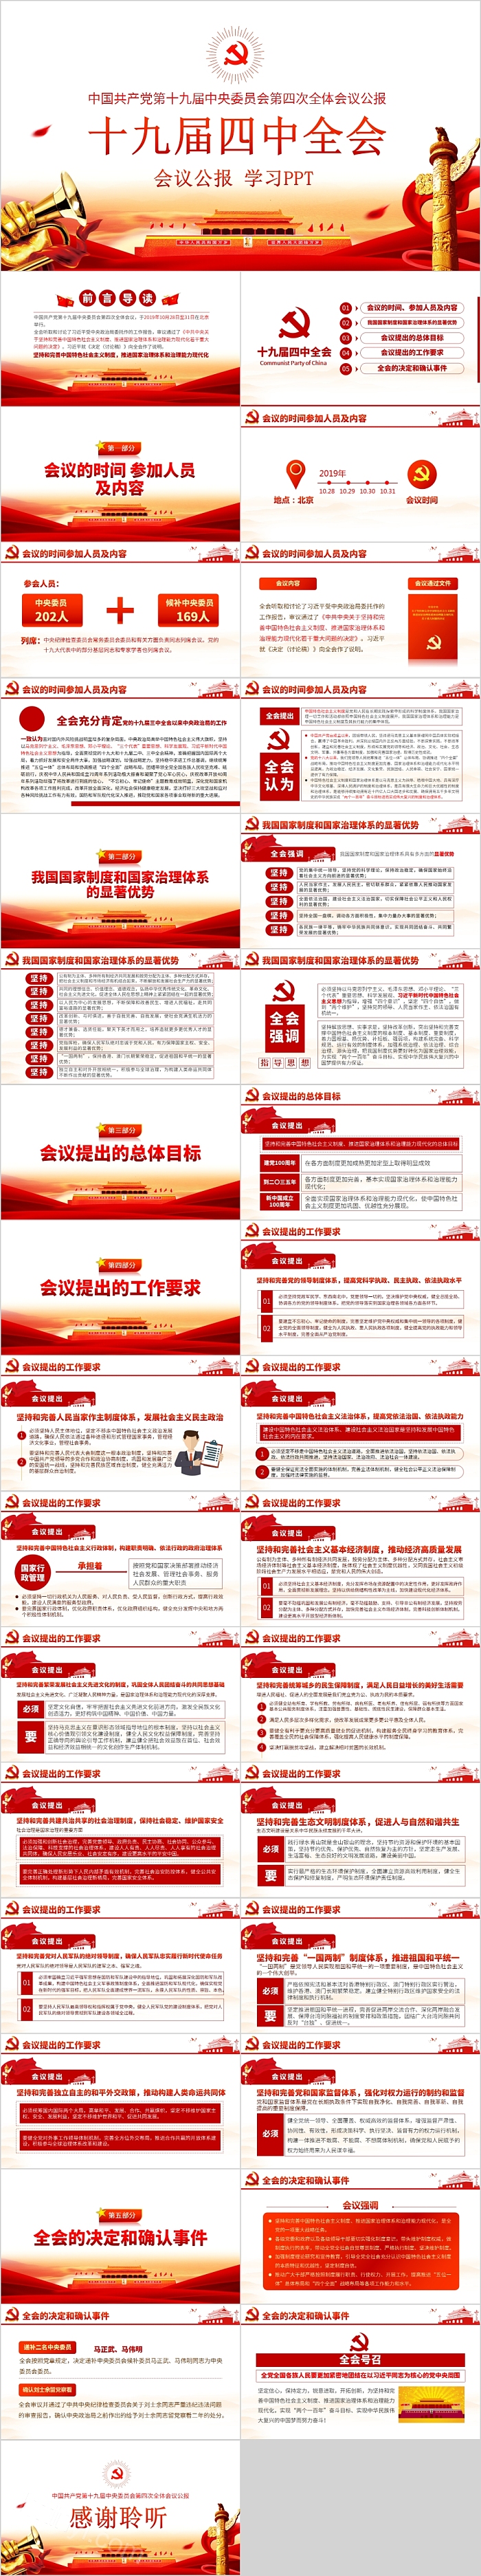 中国共产党第十九届中央委员会第四次全体会议公报学习十九届四中全会PPT模板